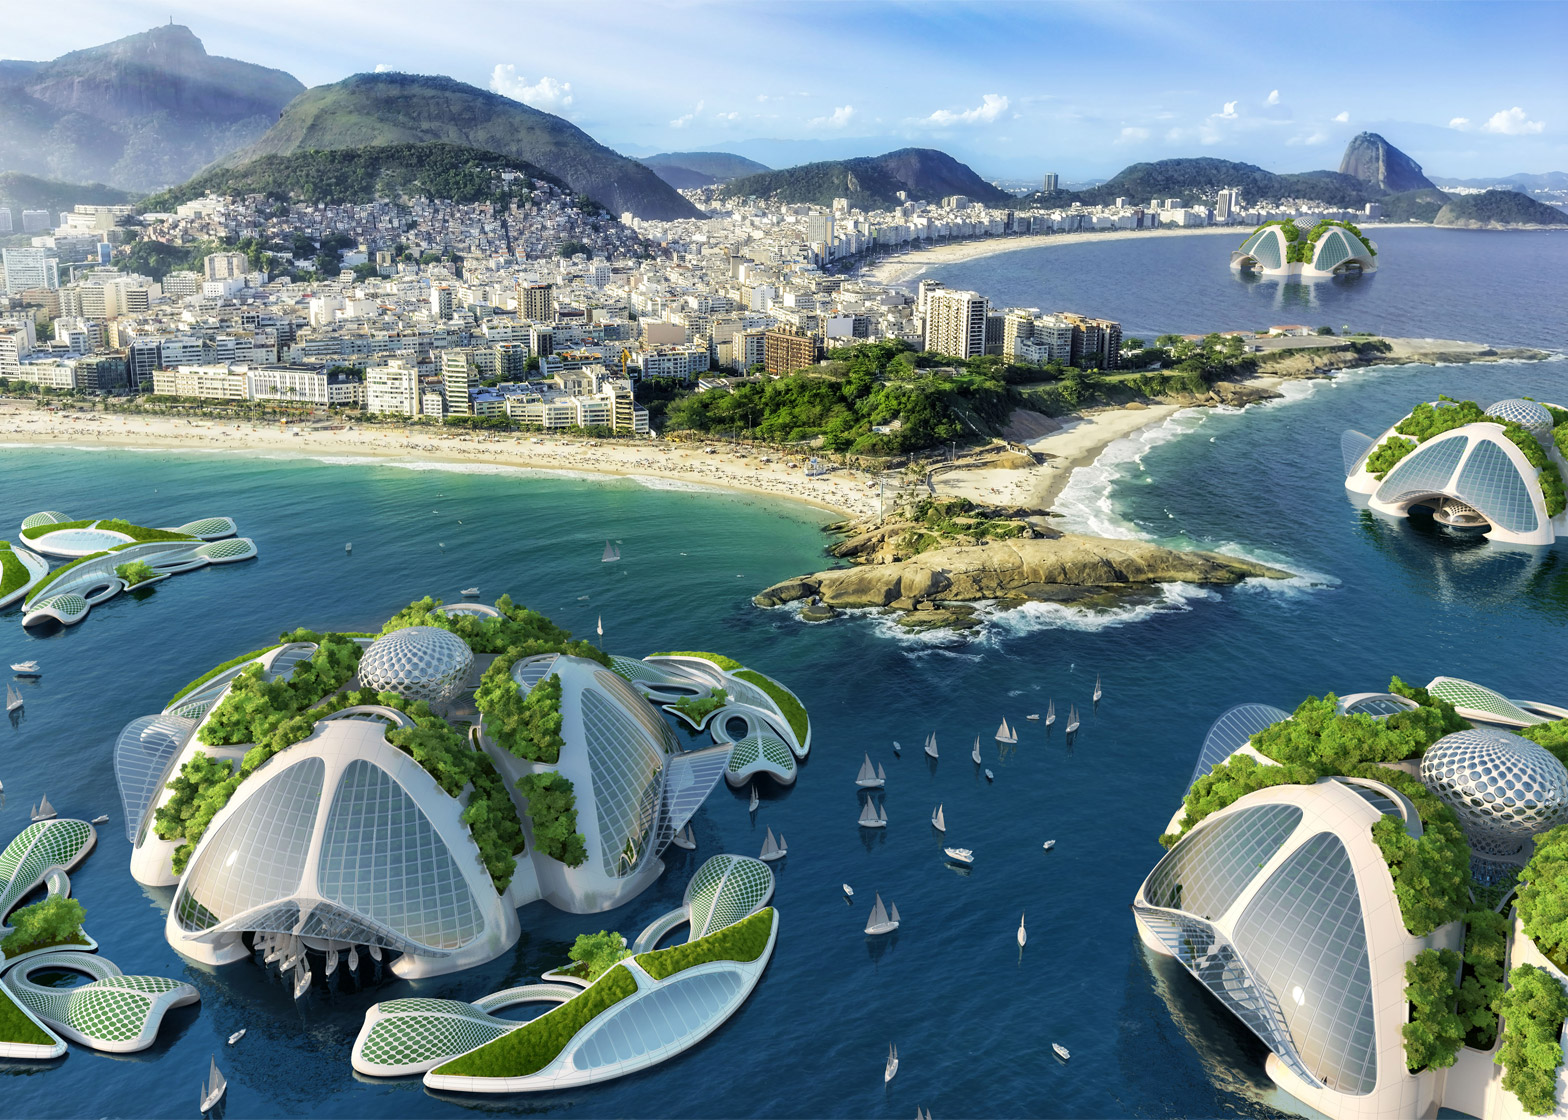 Aequorea-Oceanscraper-3D-printed-from-recycled-ocean-trash_Vincent-Callebaut_dezeen_1568_8.jpg